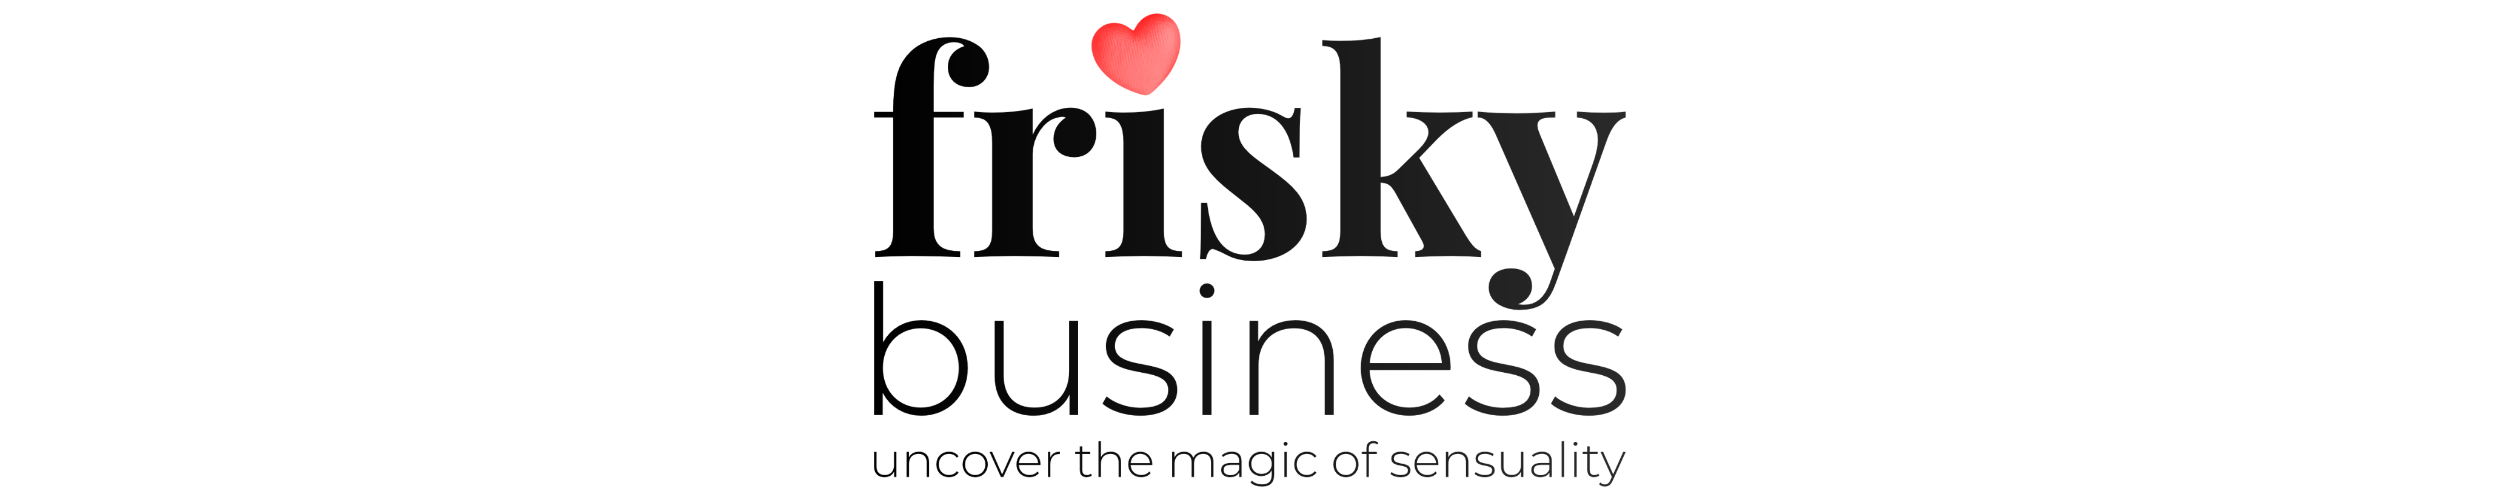 Frisky Business Singapore Company Logo